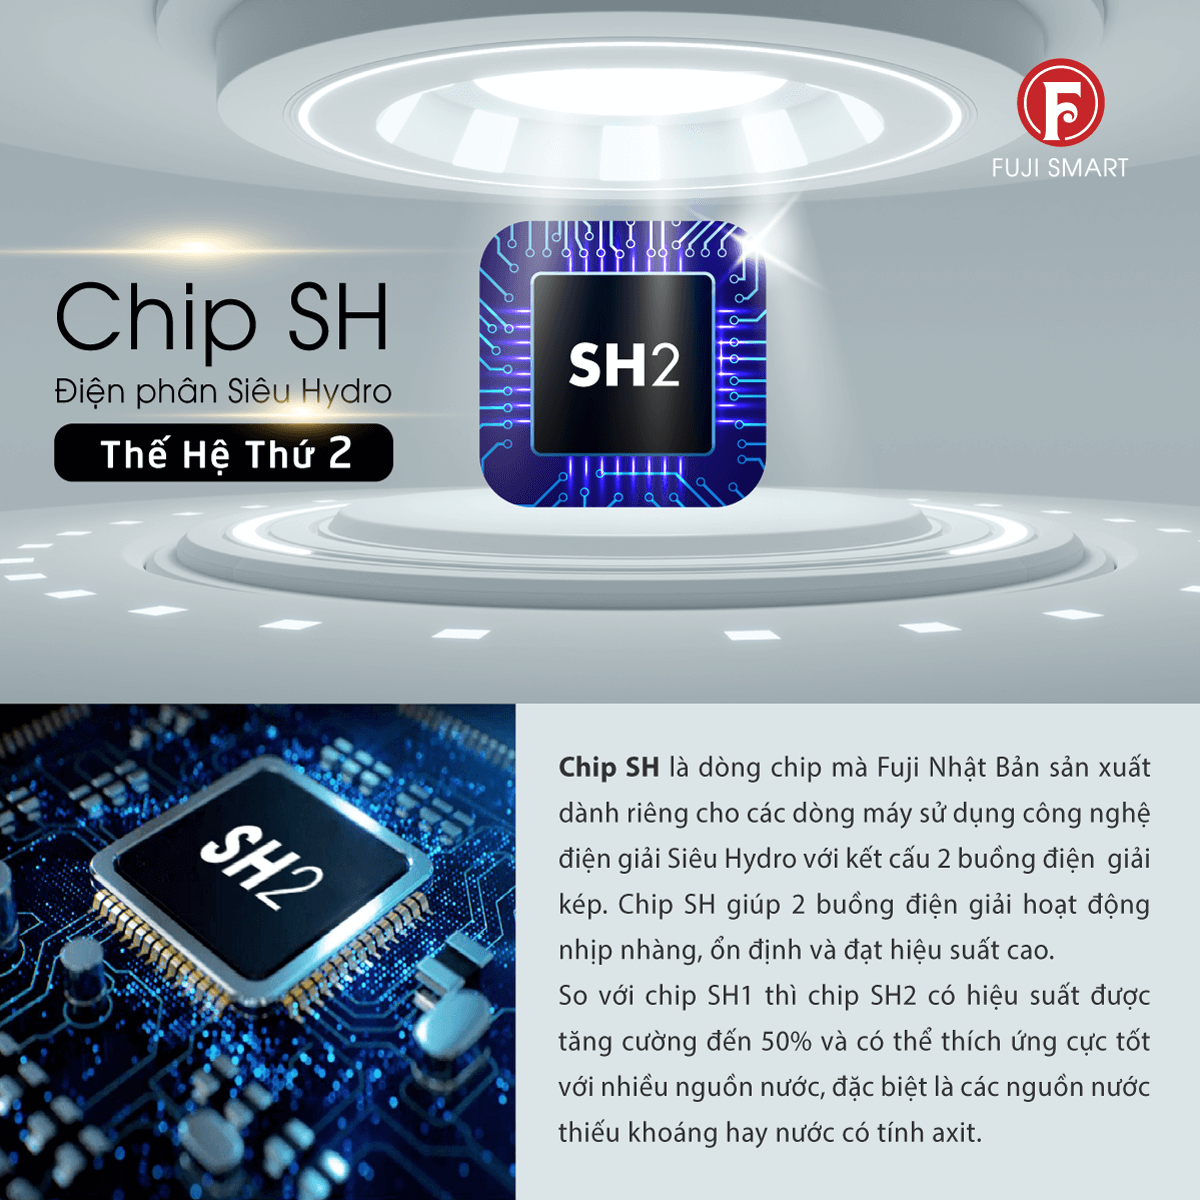 Chip SH2 điện phân siêu Hydro